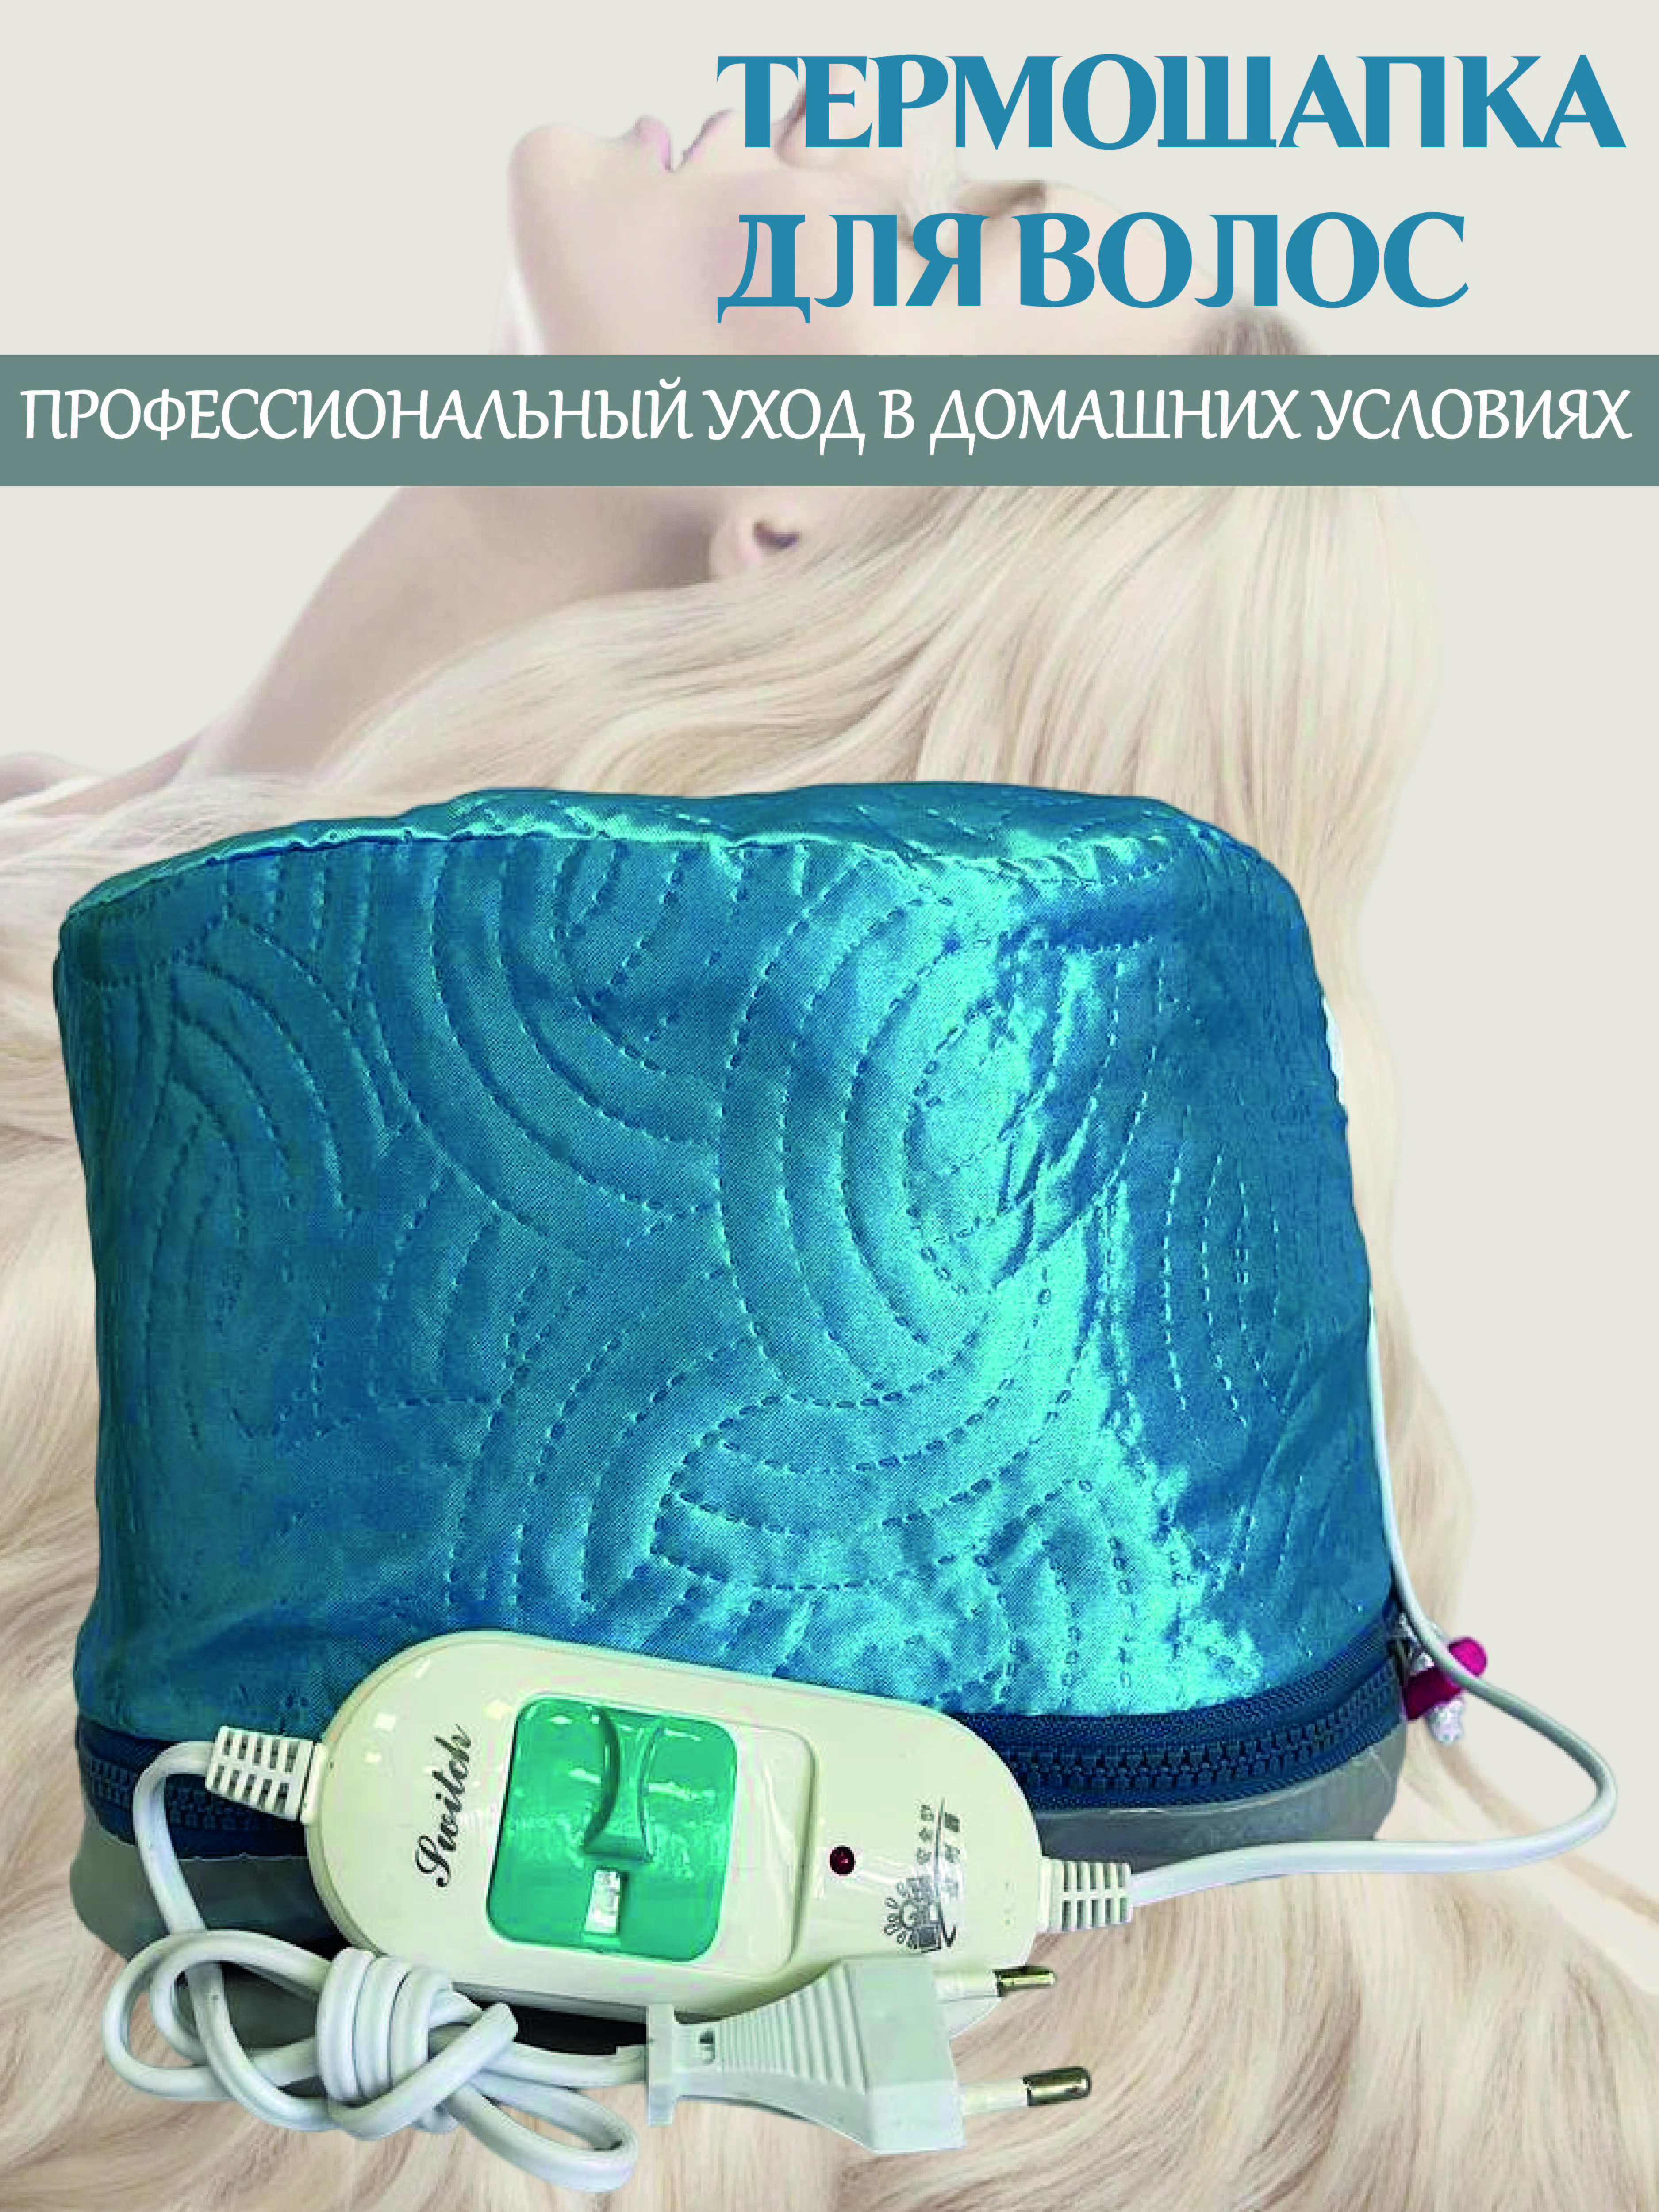 Термошапка для волос SellWildWoman электрическая Голубая mayitr usb электрическая грелка 3 передачи регулируемая температура diy термо жилет куртка